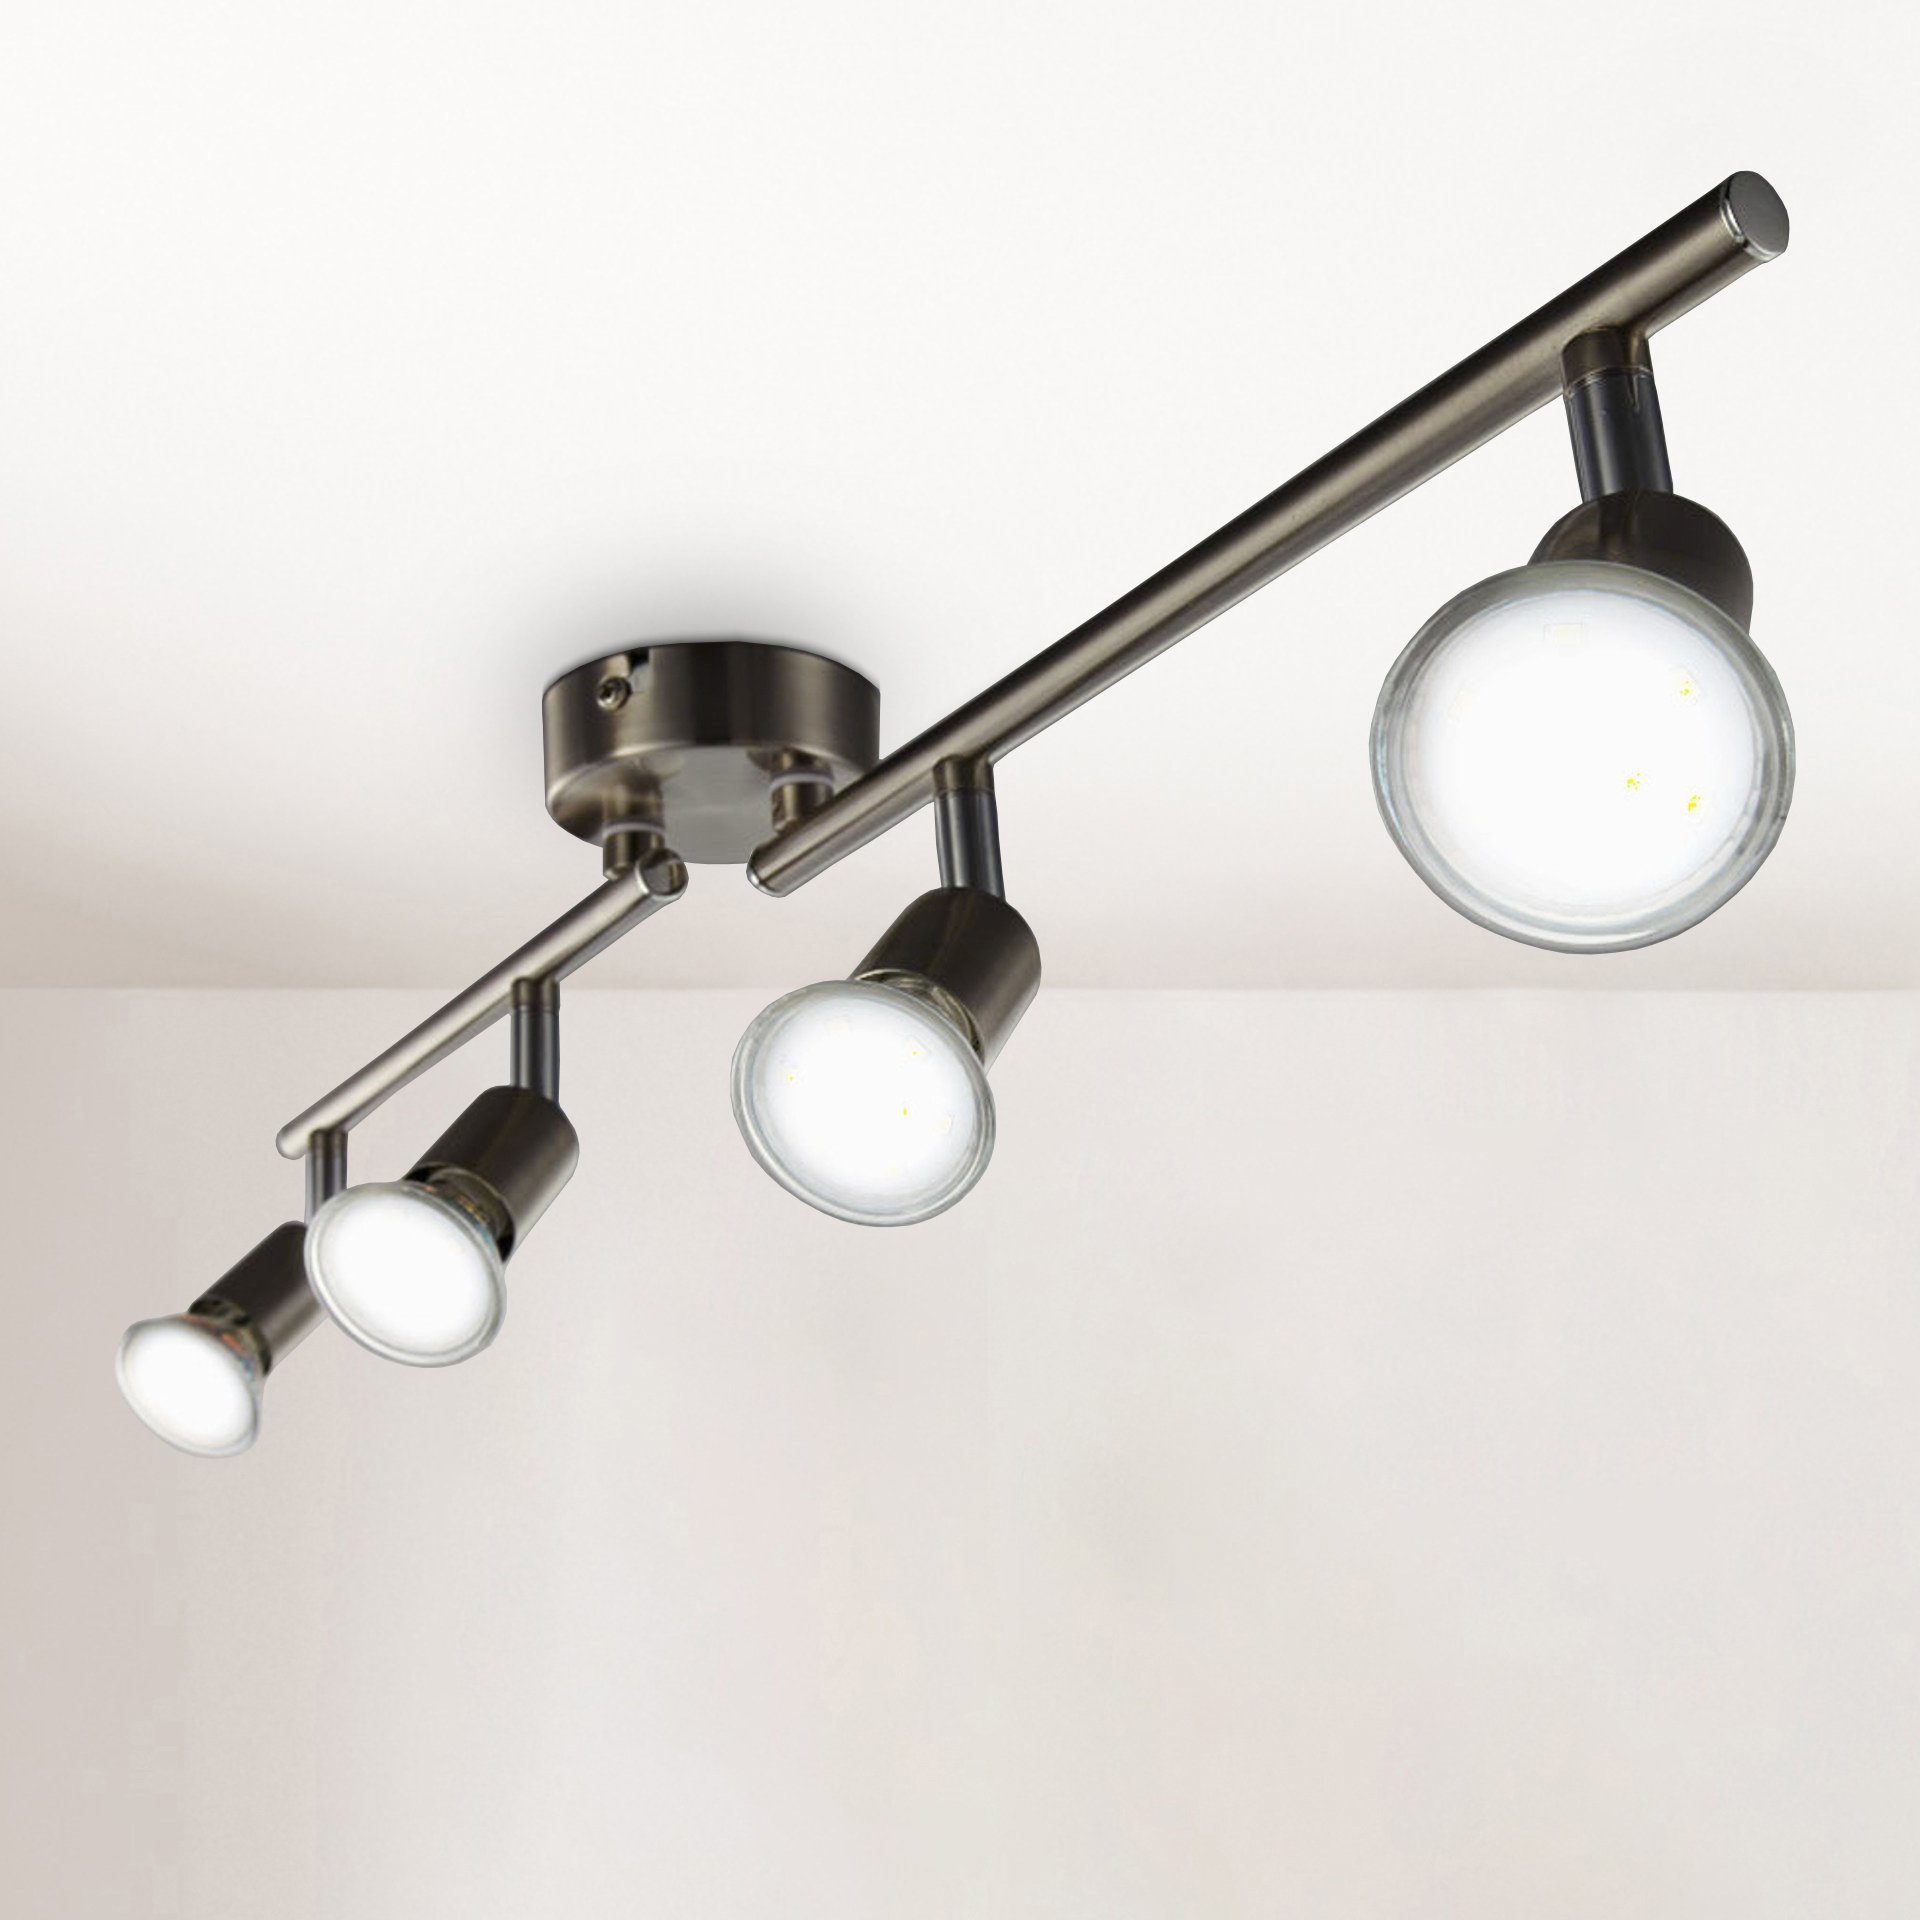 9W LED Decken Spot Lampe Strahler Esszimmer Küche Beleuchtung ØxH 250x150mm GU10 